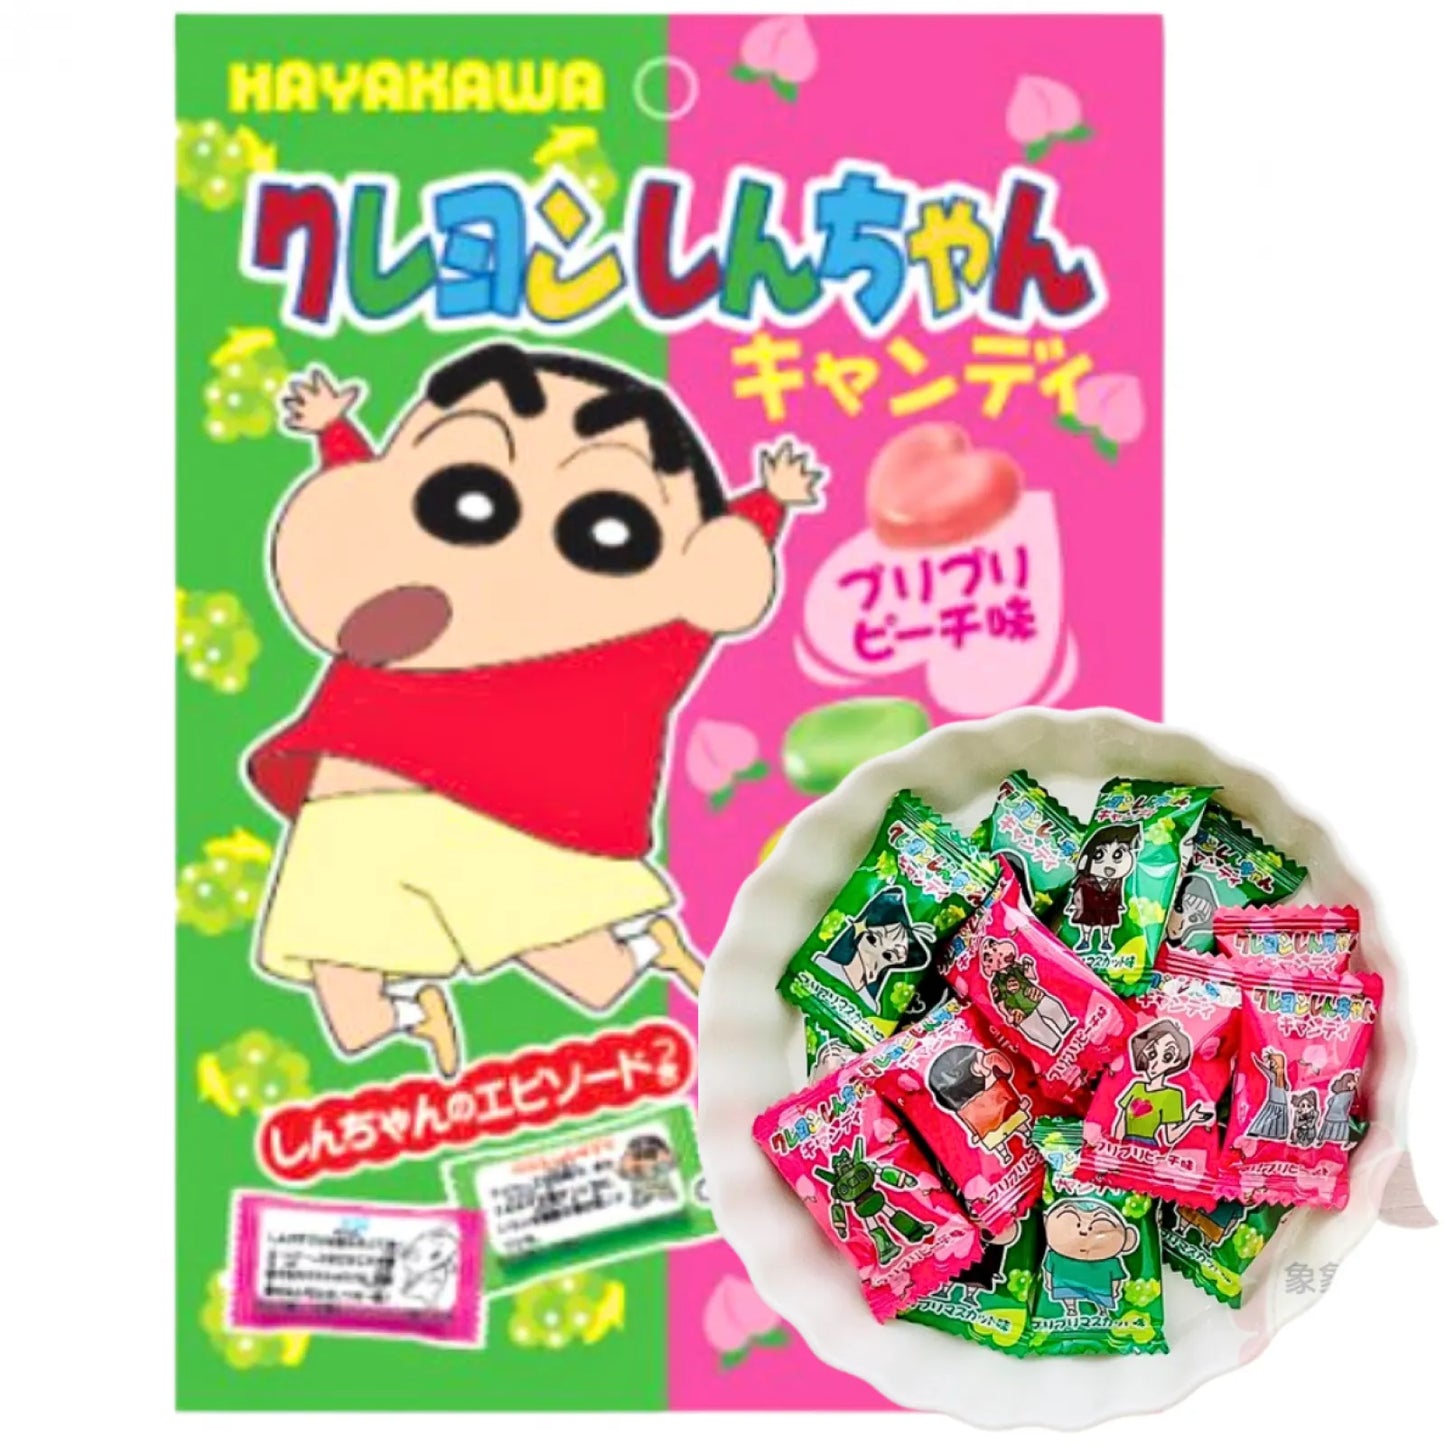 HAYAKAWA Heart Shin-Chan Peach & Grape Candy - Japan